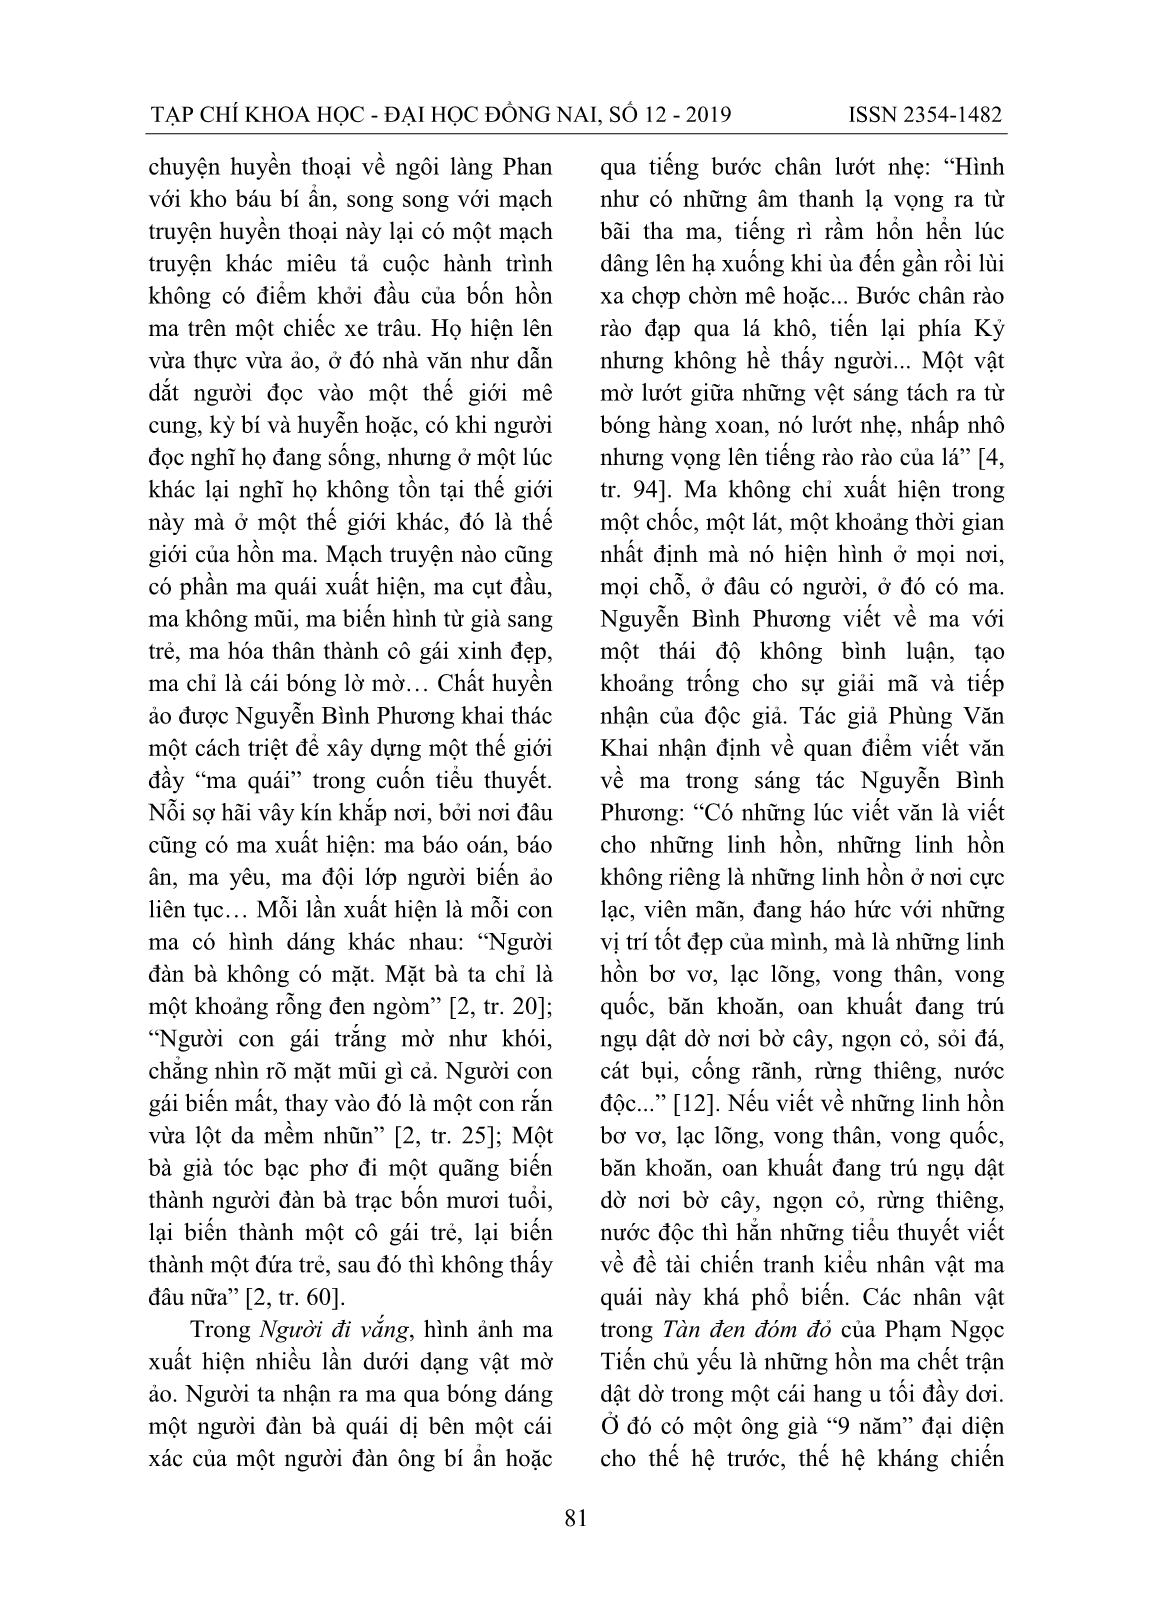 Nghệ thuật xây dựng nhân vật trong tiểu thuyết Việt Nam đương đại viết theo khuynh hướng hiện thực huyền ảo trang 10